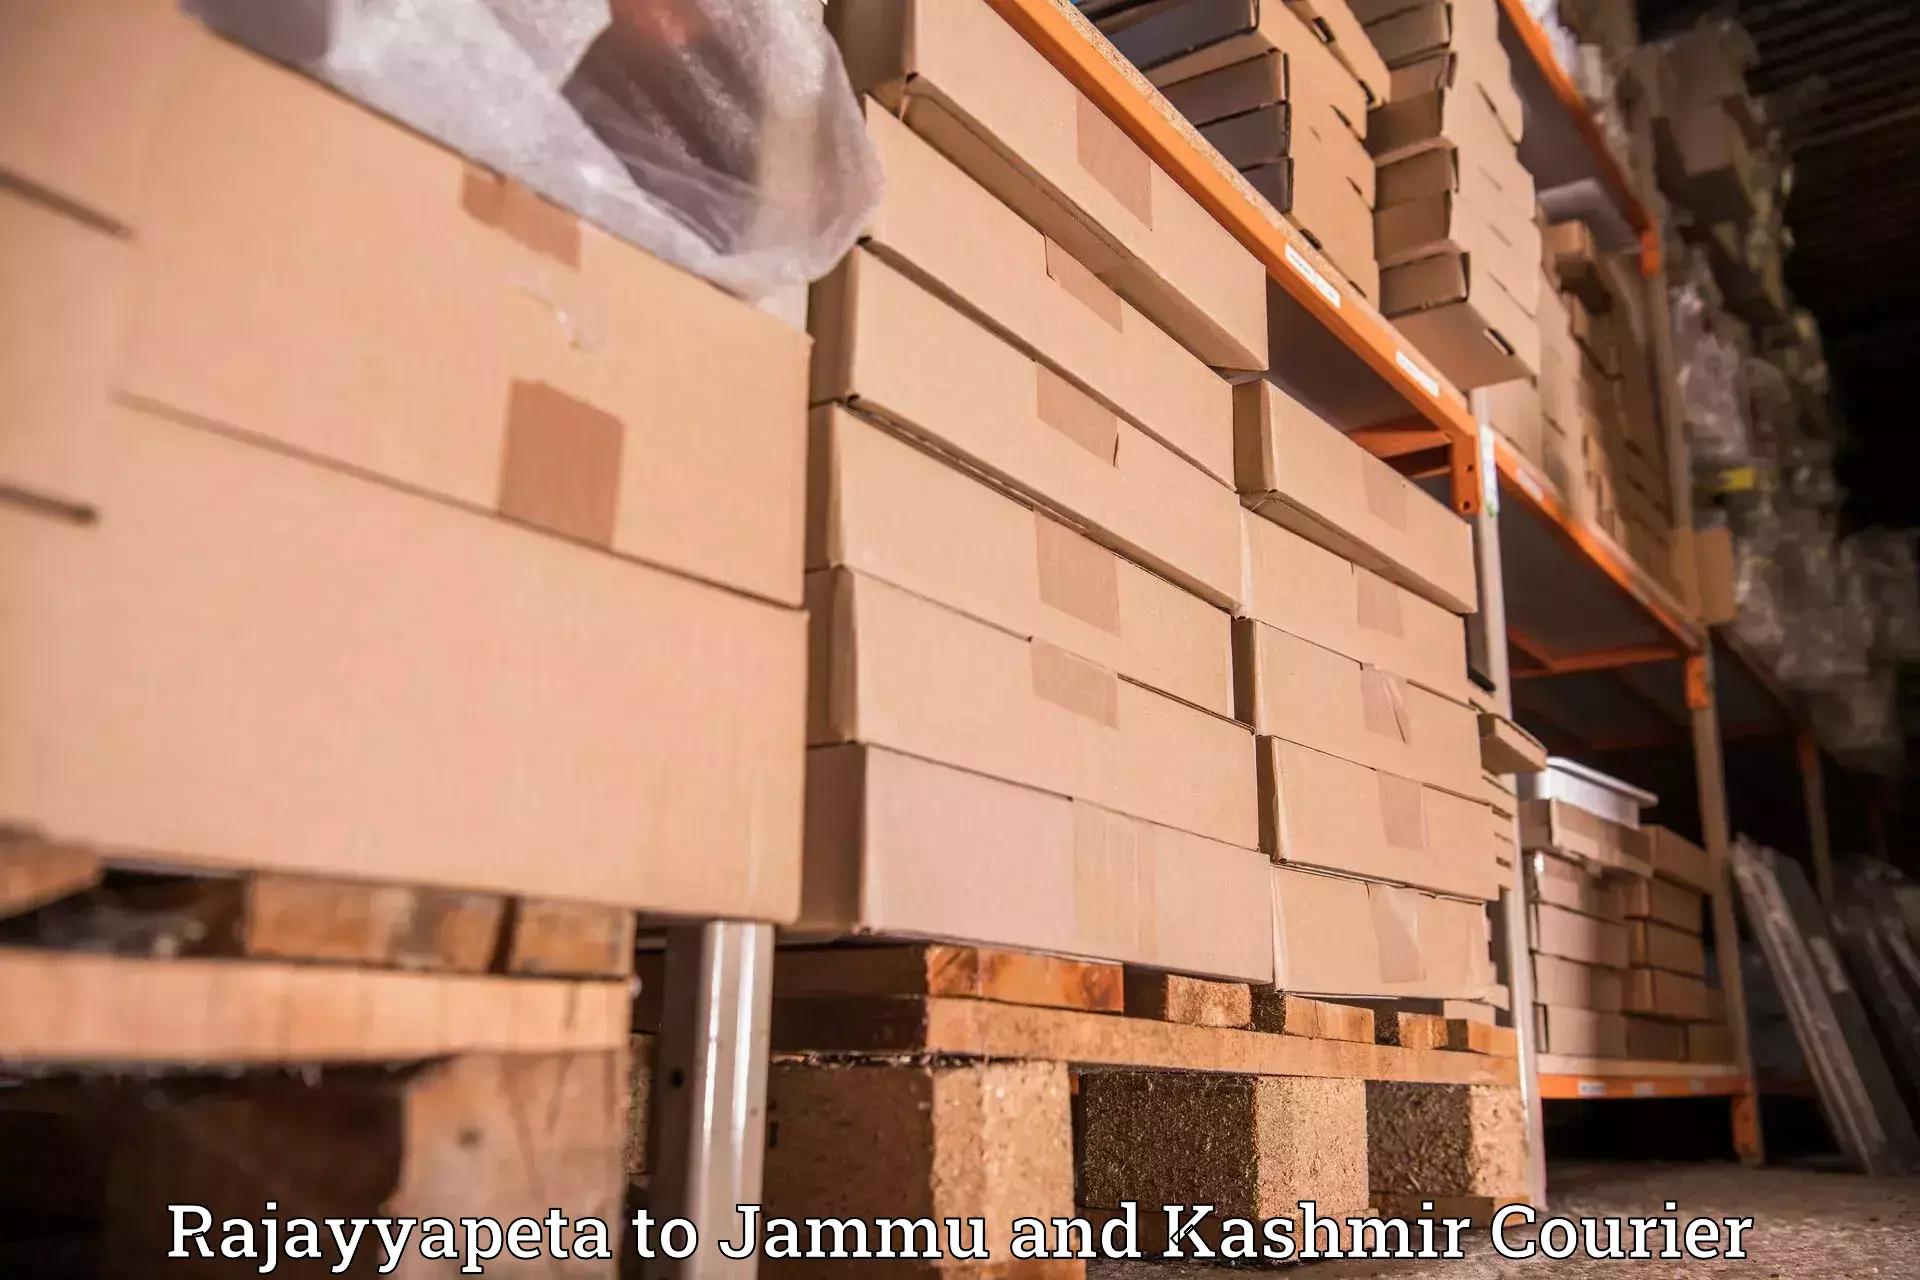 Customer-centric shipping Rajayyapeta to Leh